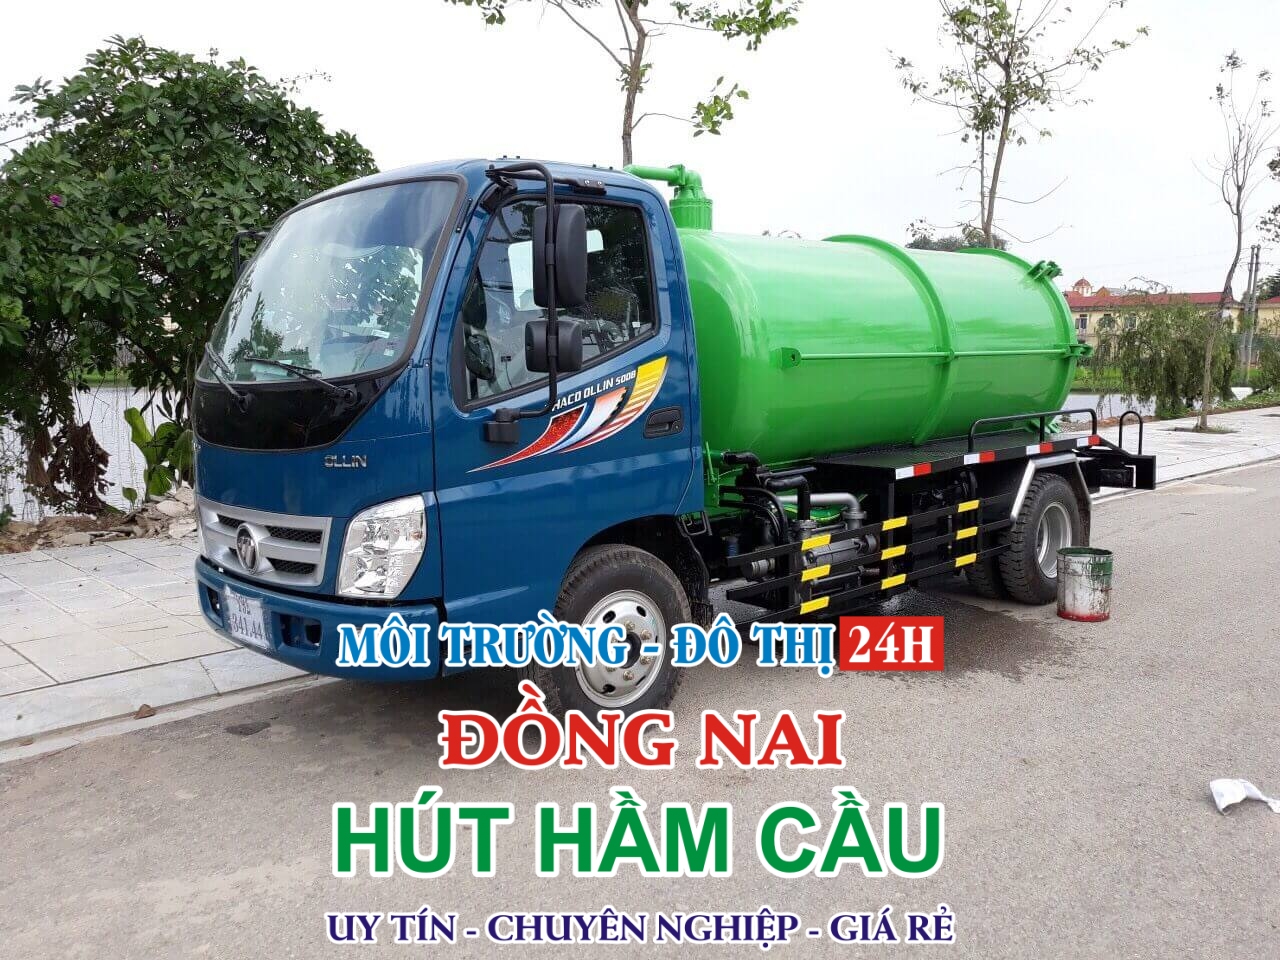 Công ty Hút Hầm Cầu ở Huyện Định Quán, Đồng Nai